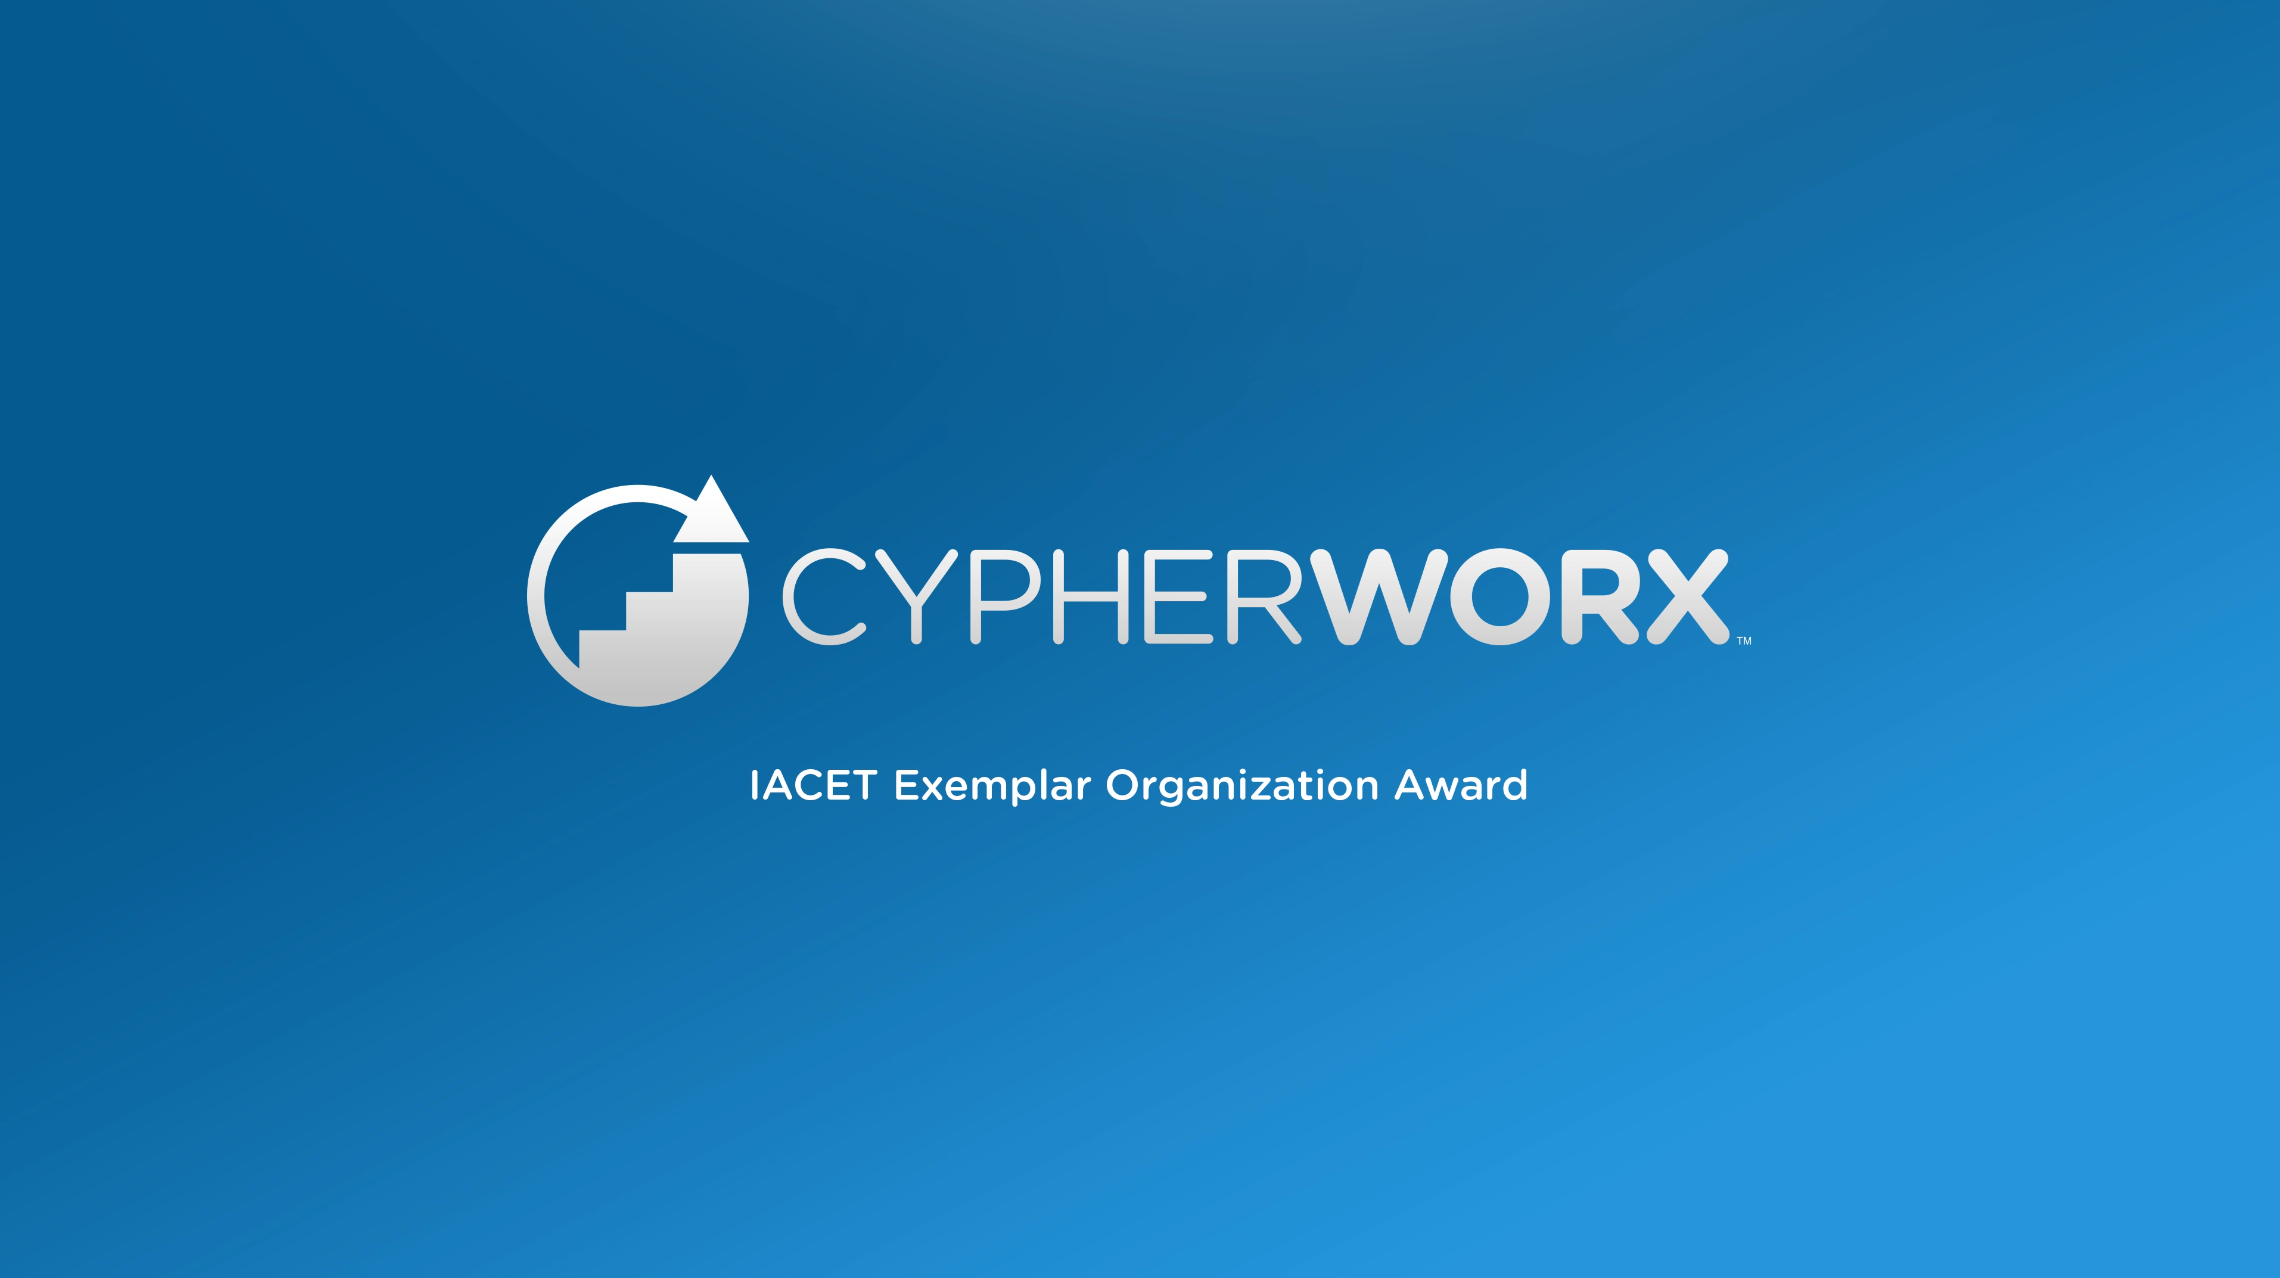 IACET Exemplar Organization Award